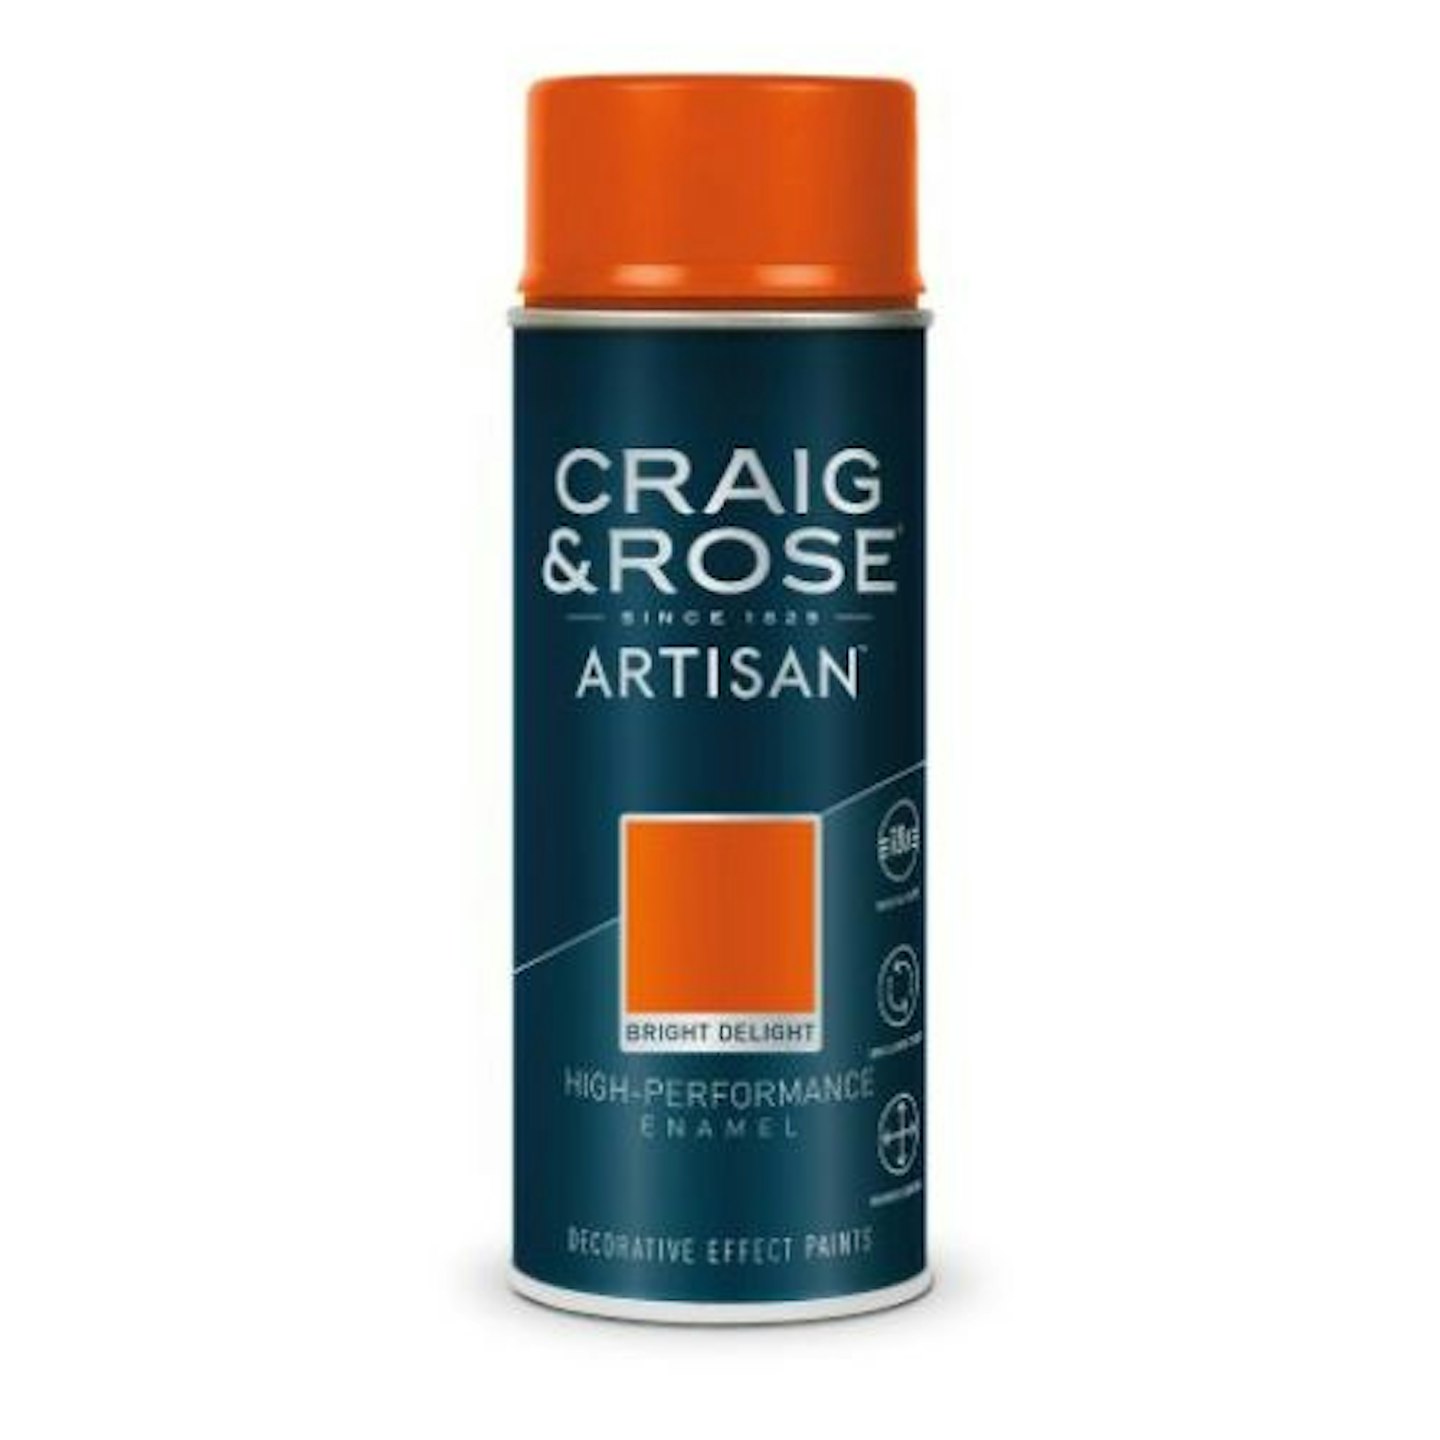 Craig & Rose Artisan Enamel Spray in Bright Delight, 400ml